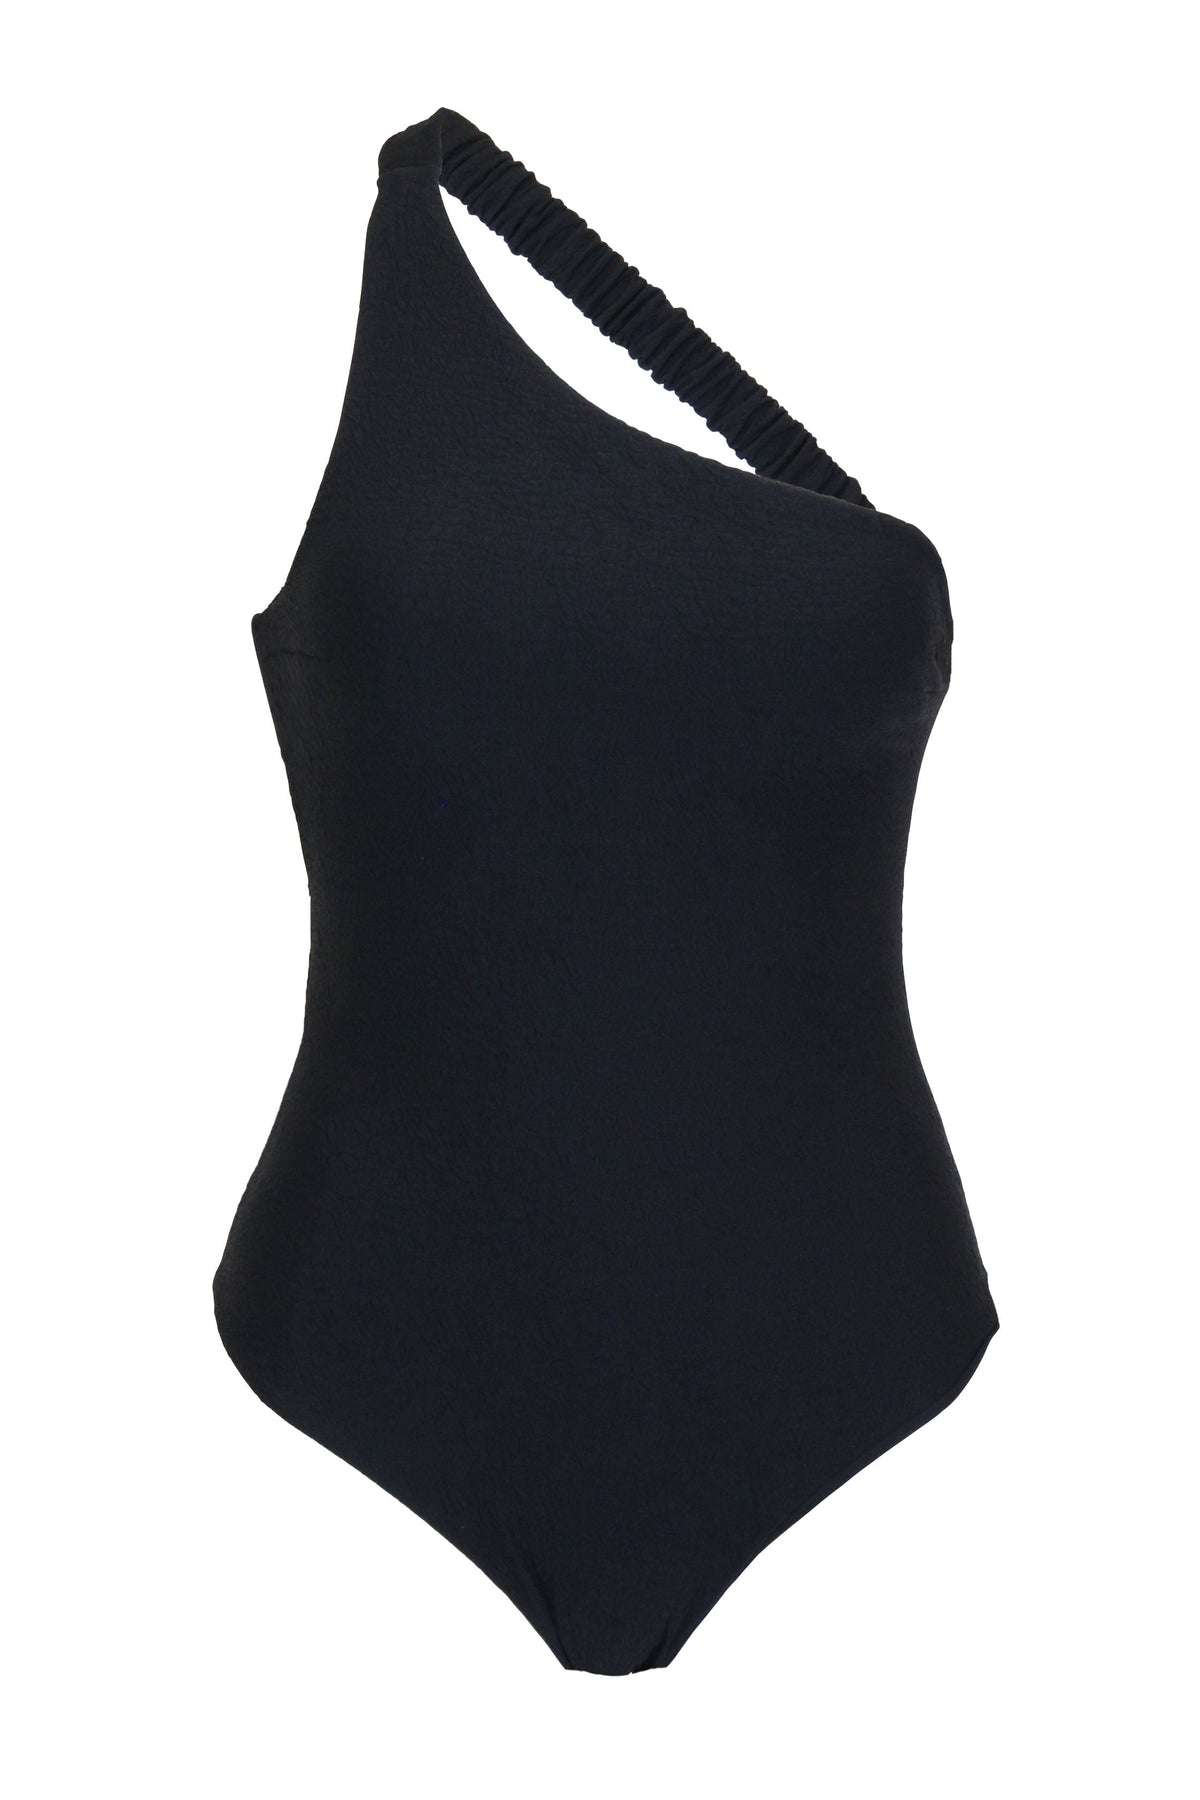 Undress Code Bodysuit Black / S Queen Bee Swimsuit - Black